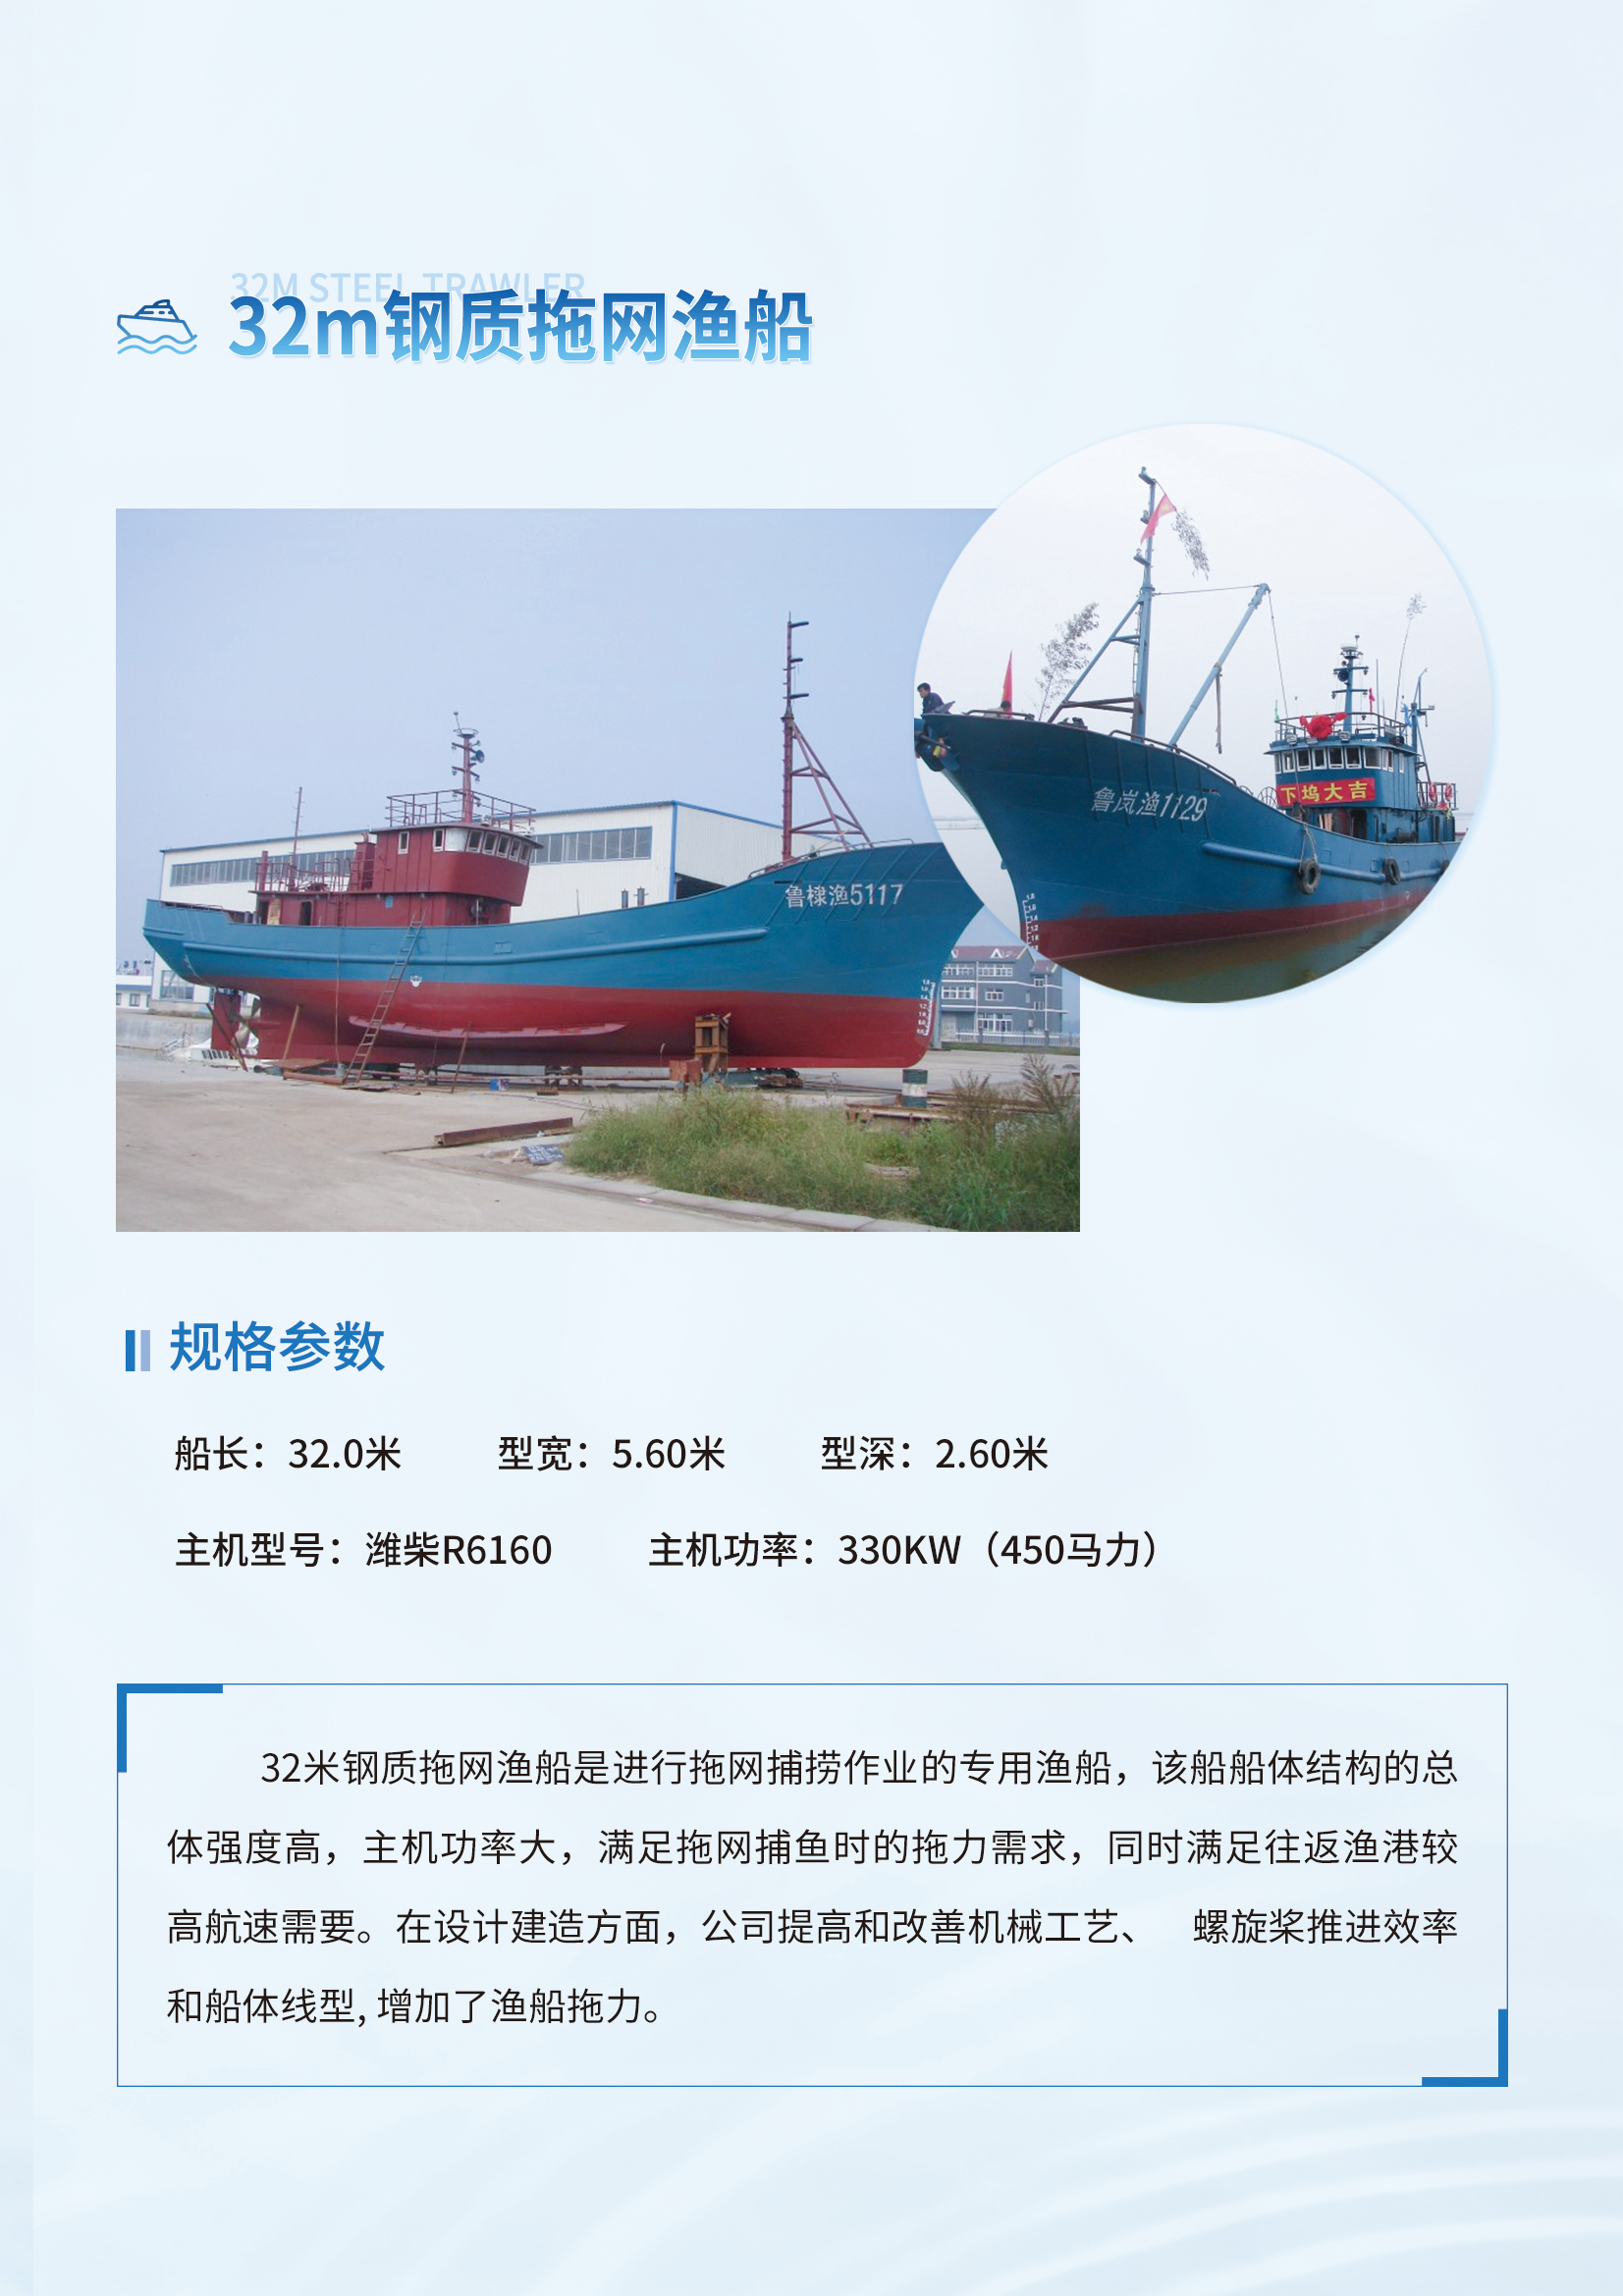 自航反铲式挖泥船-32m钢质拖网渔船_02.png